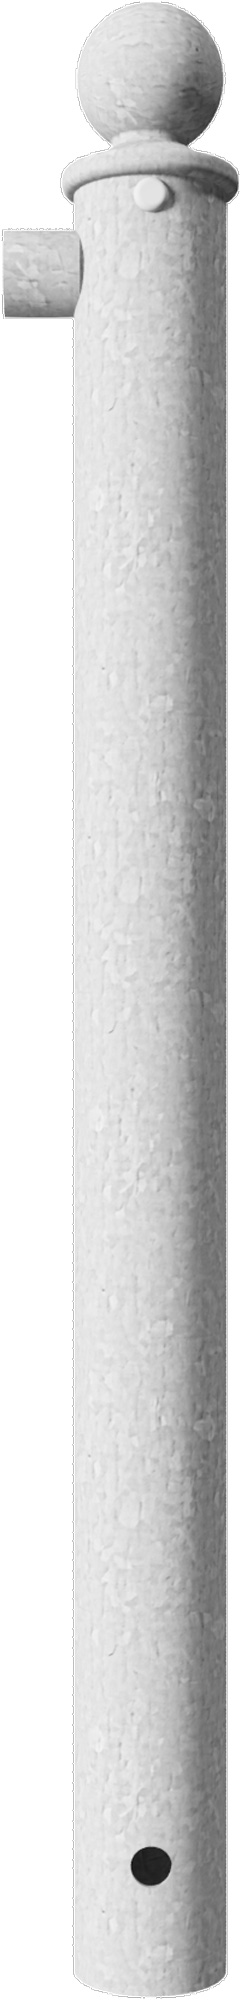 Schake Rabattengeländer Stahl Endpfosten OE Ø 60 mm verzinkt